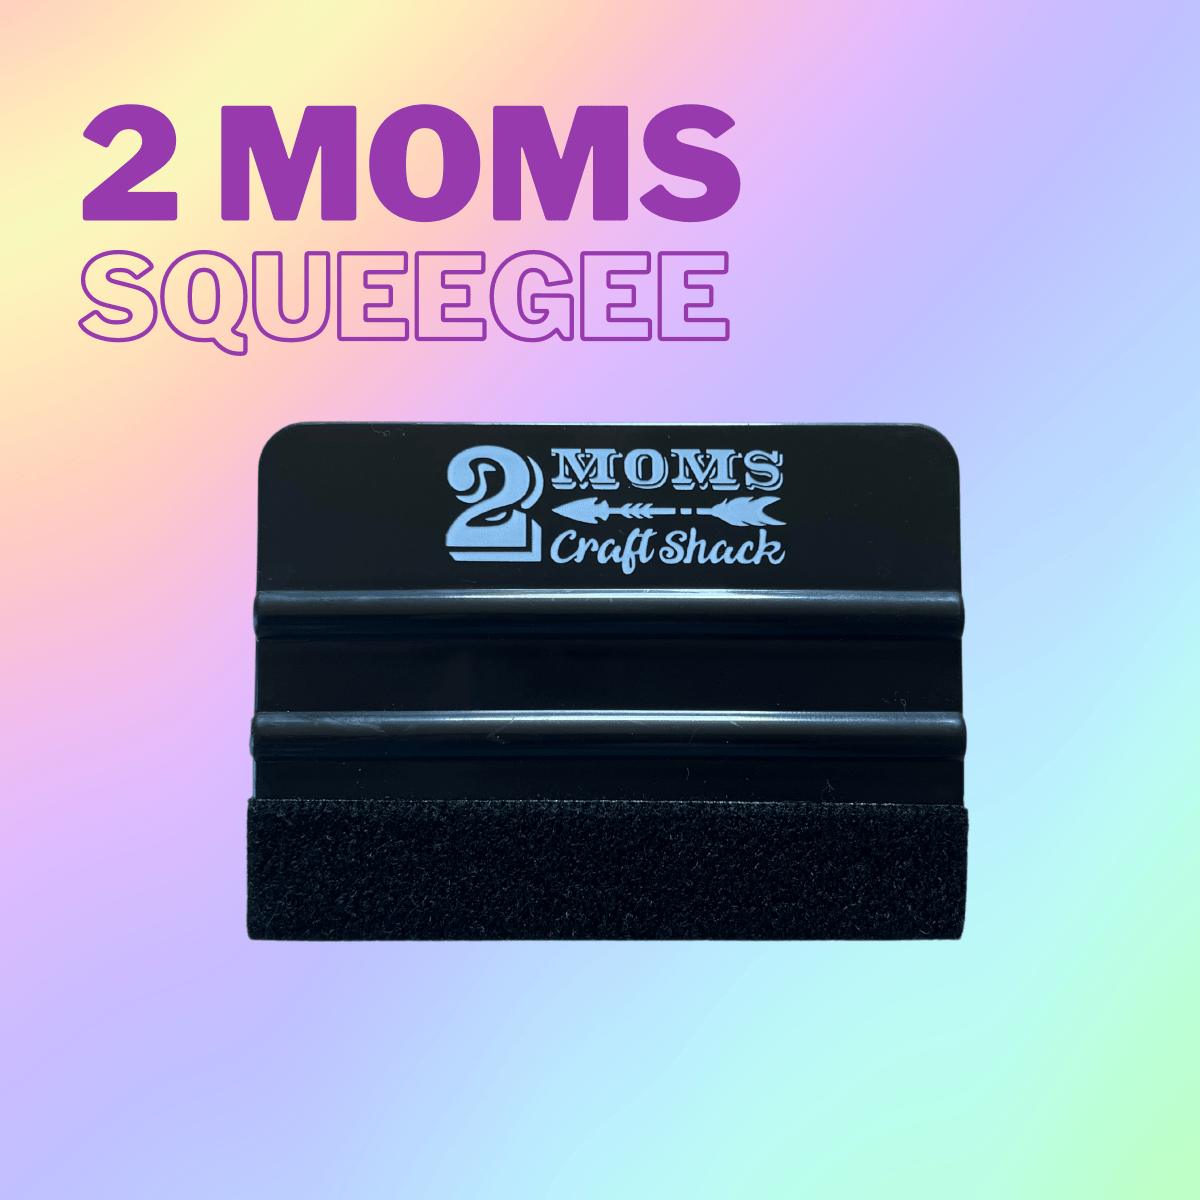 2 MOMS SQUEEGEE - BEST SELLER